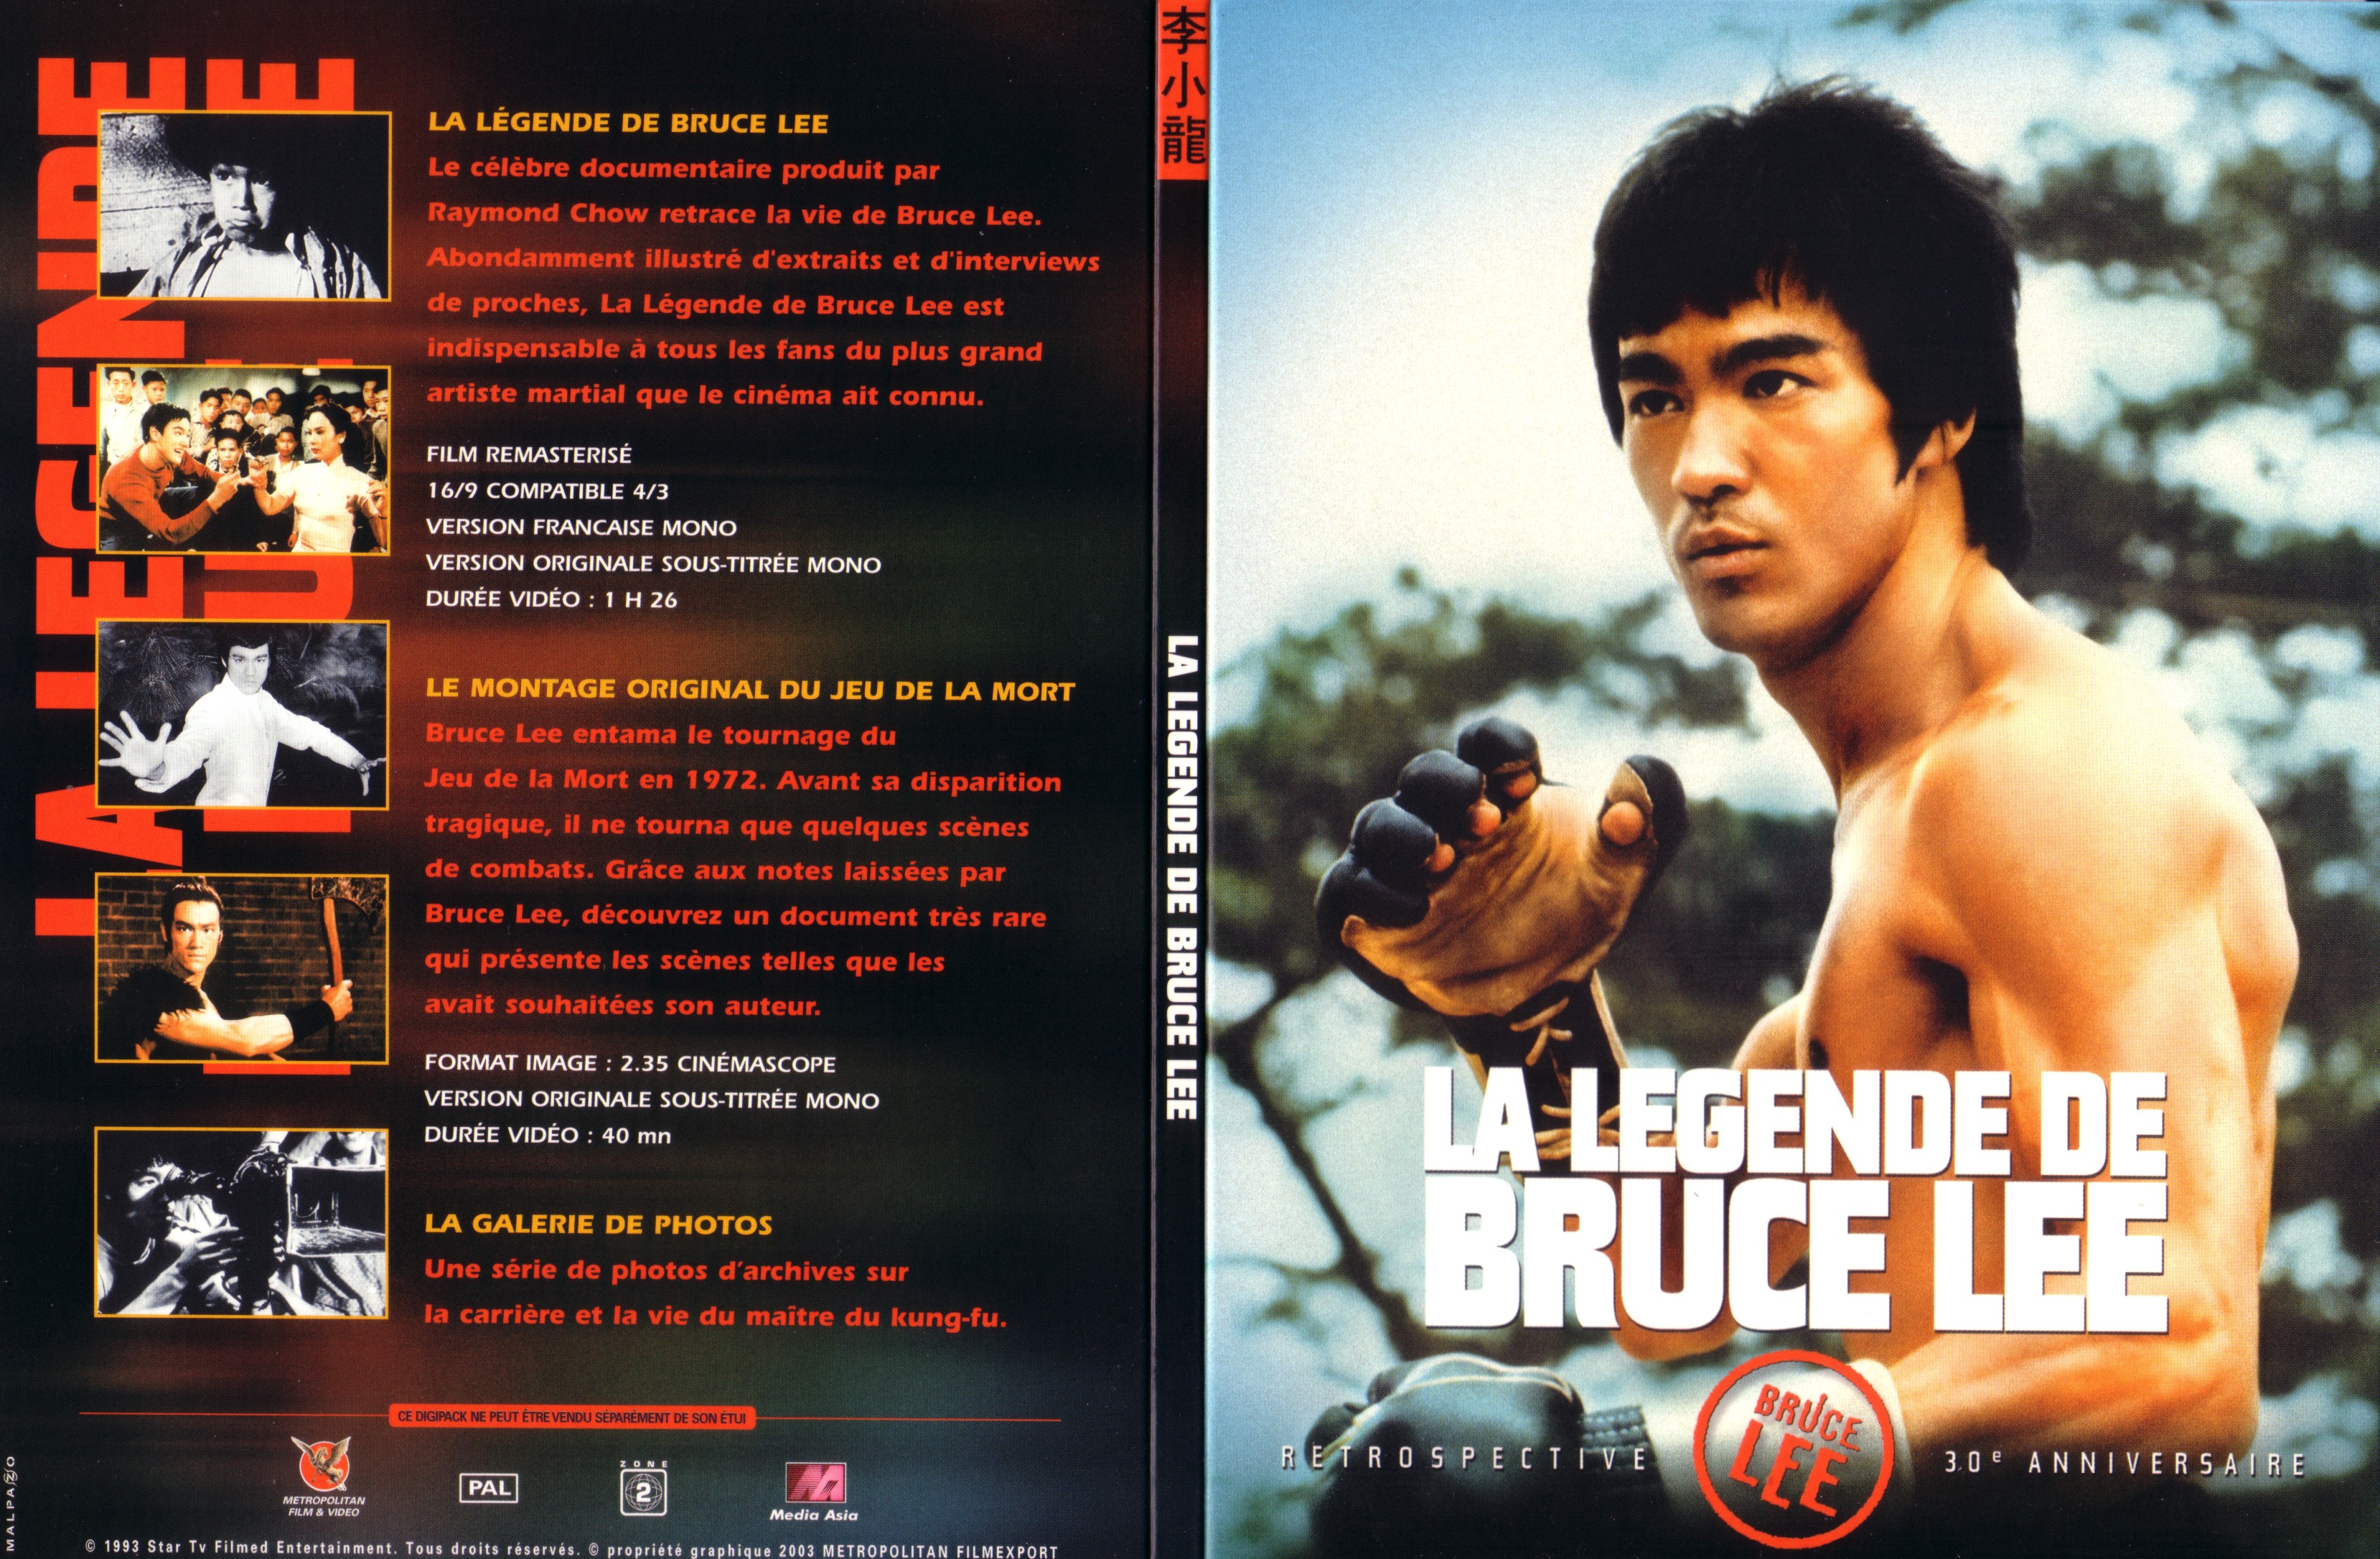 Jaquette DVD La lgende de Bruce Lee